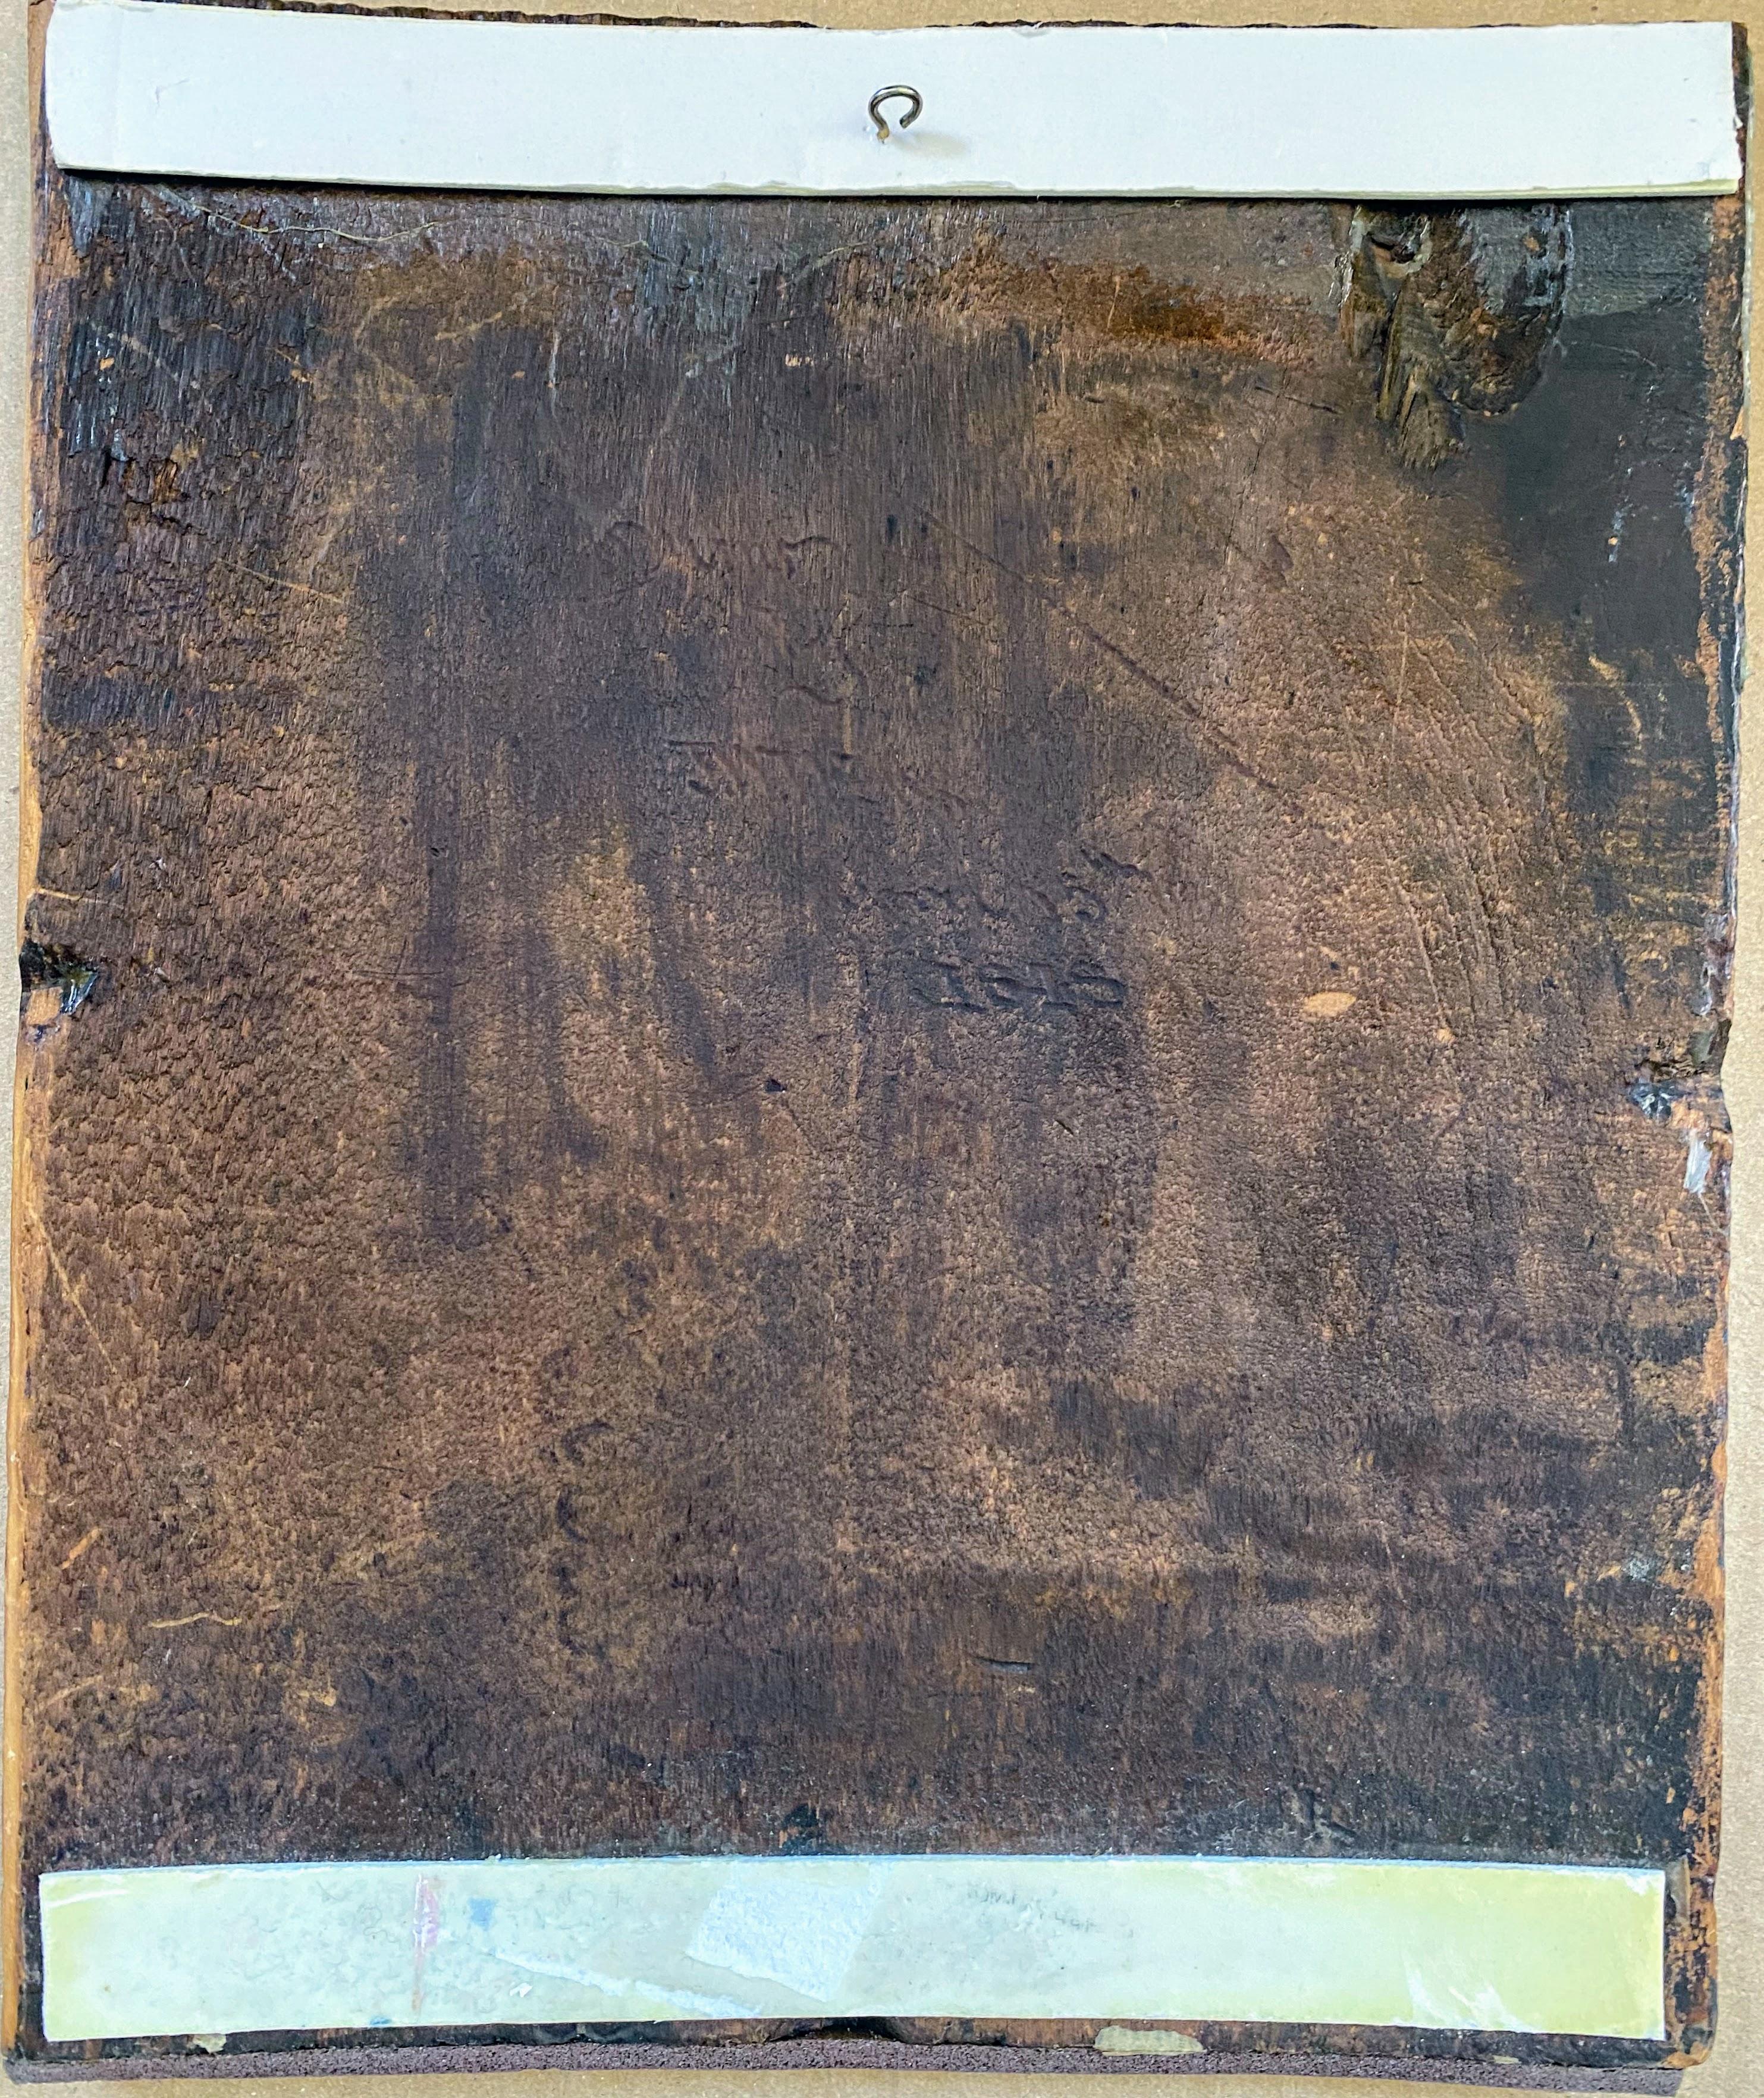 eine wunderbare antike Schürhakenarbeit/Pyrographie-Tafel von I. W. Wells, einem amerikanischen Künstler, der zwischen 1845 und 1880 blühte. Er war in Pennsylvania/Philadelphia tätig, doch die meisten seiner Werke werden in der Pinto Collection